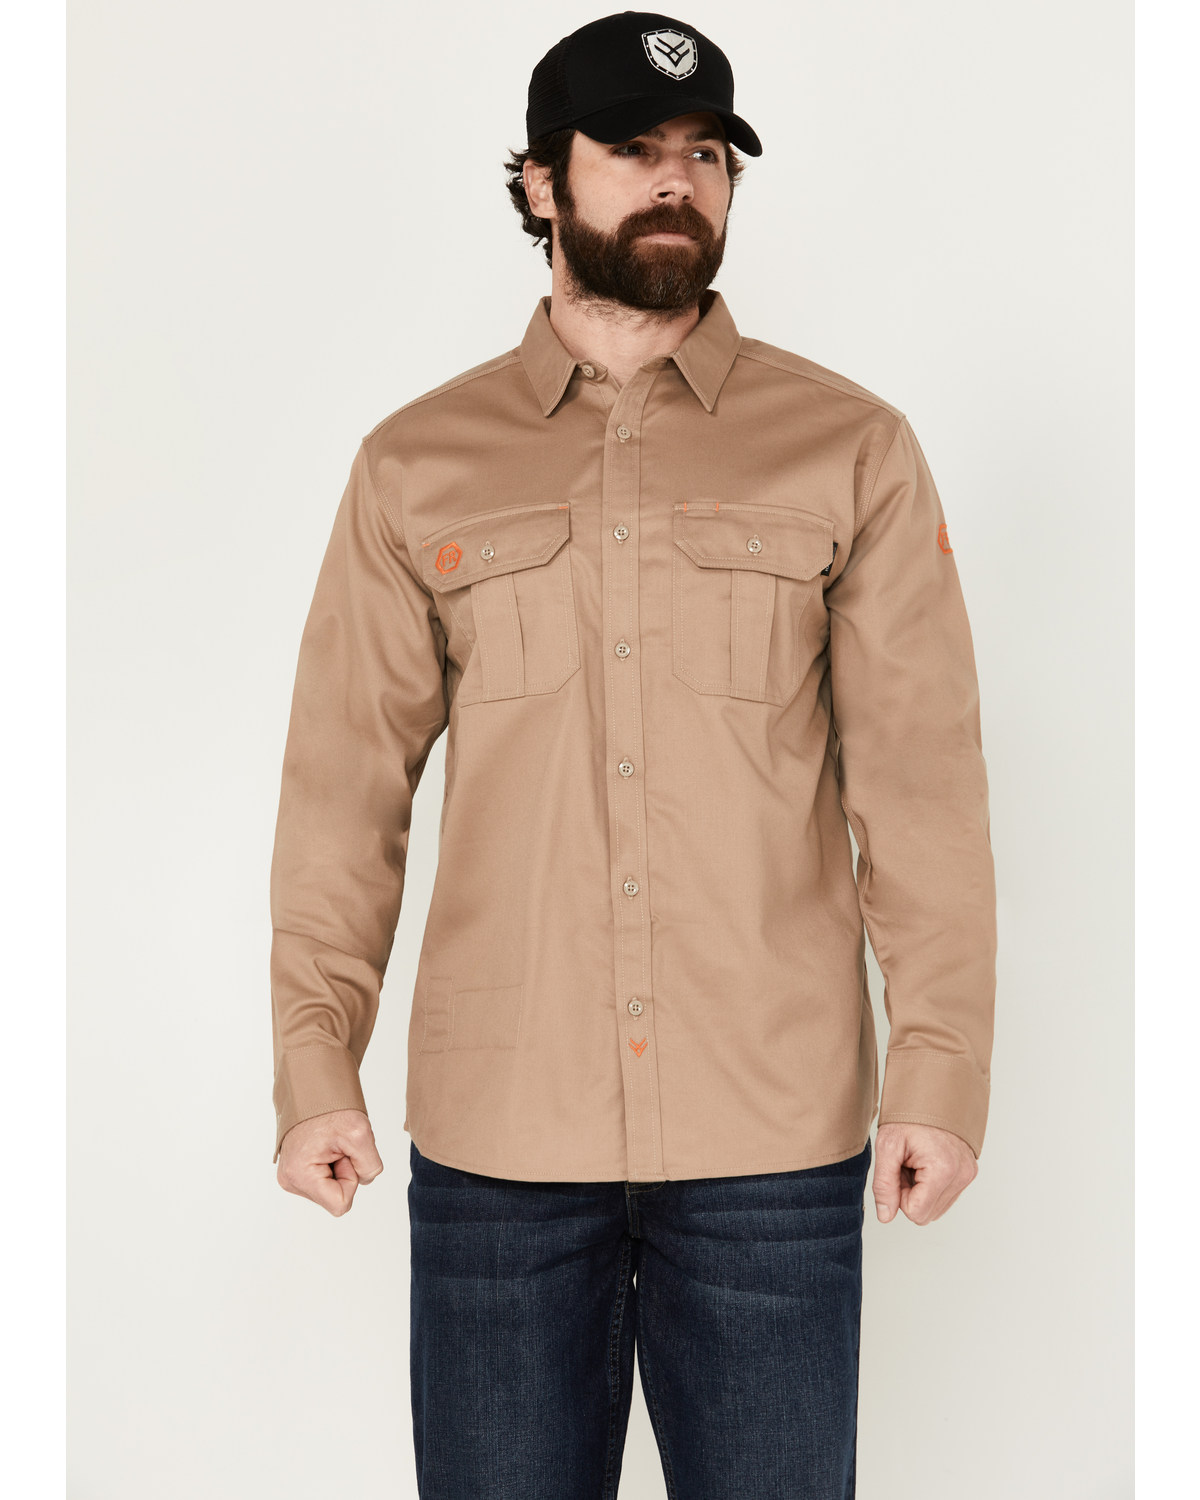 Hawx Men's FR Woven Long Sleeve Button-Down Work Shirt